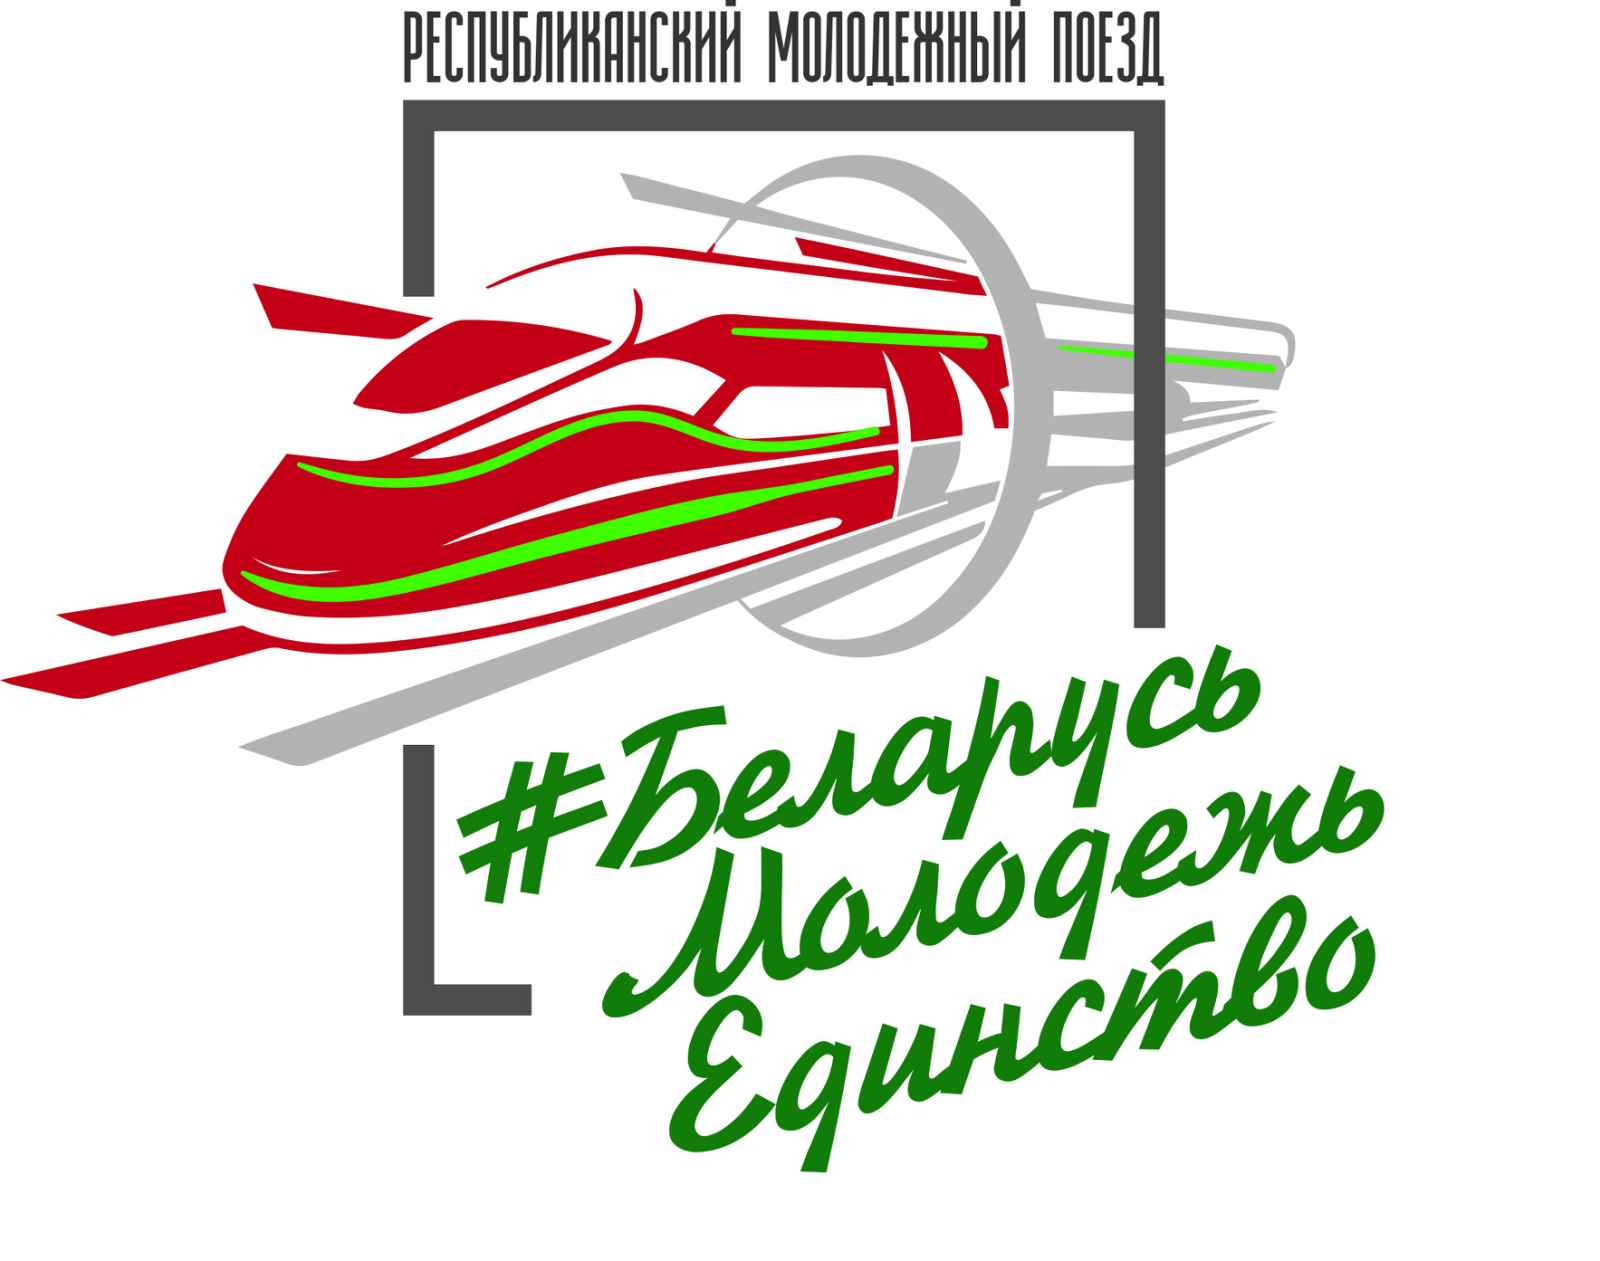 Республиканский молодежный поезд #БеларусьМолодежьЕдинство отправится в путешествие по Беларуси 15 июля